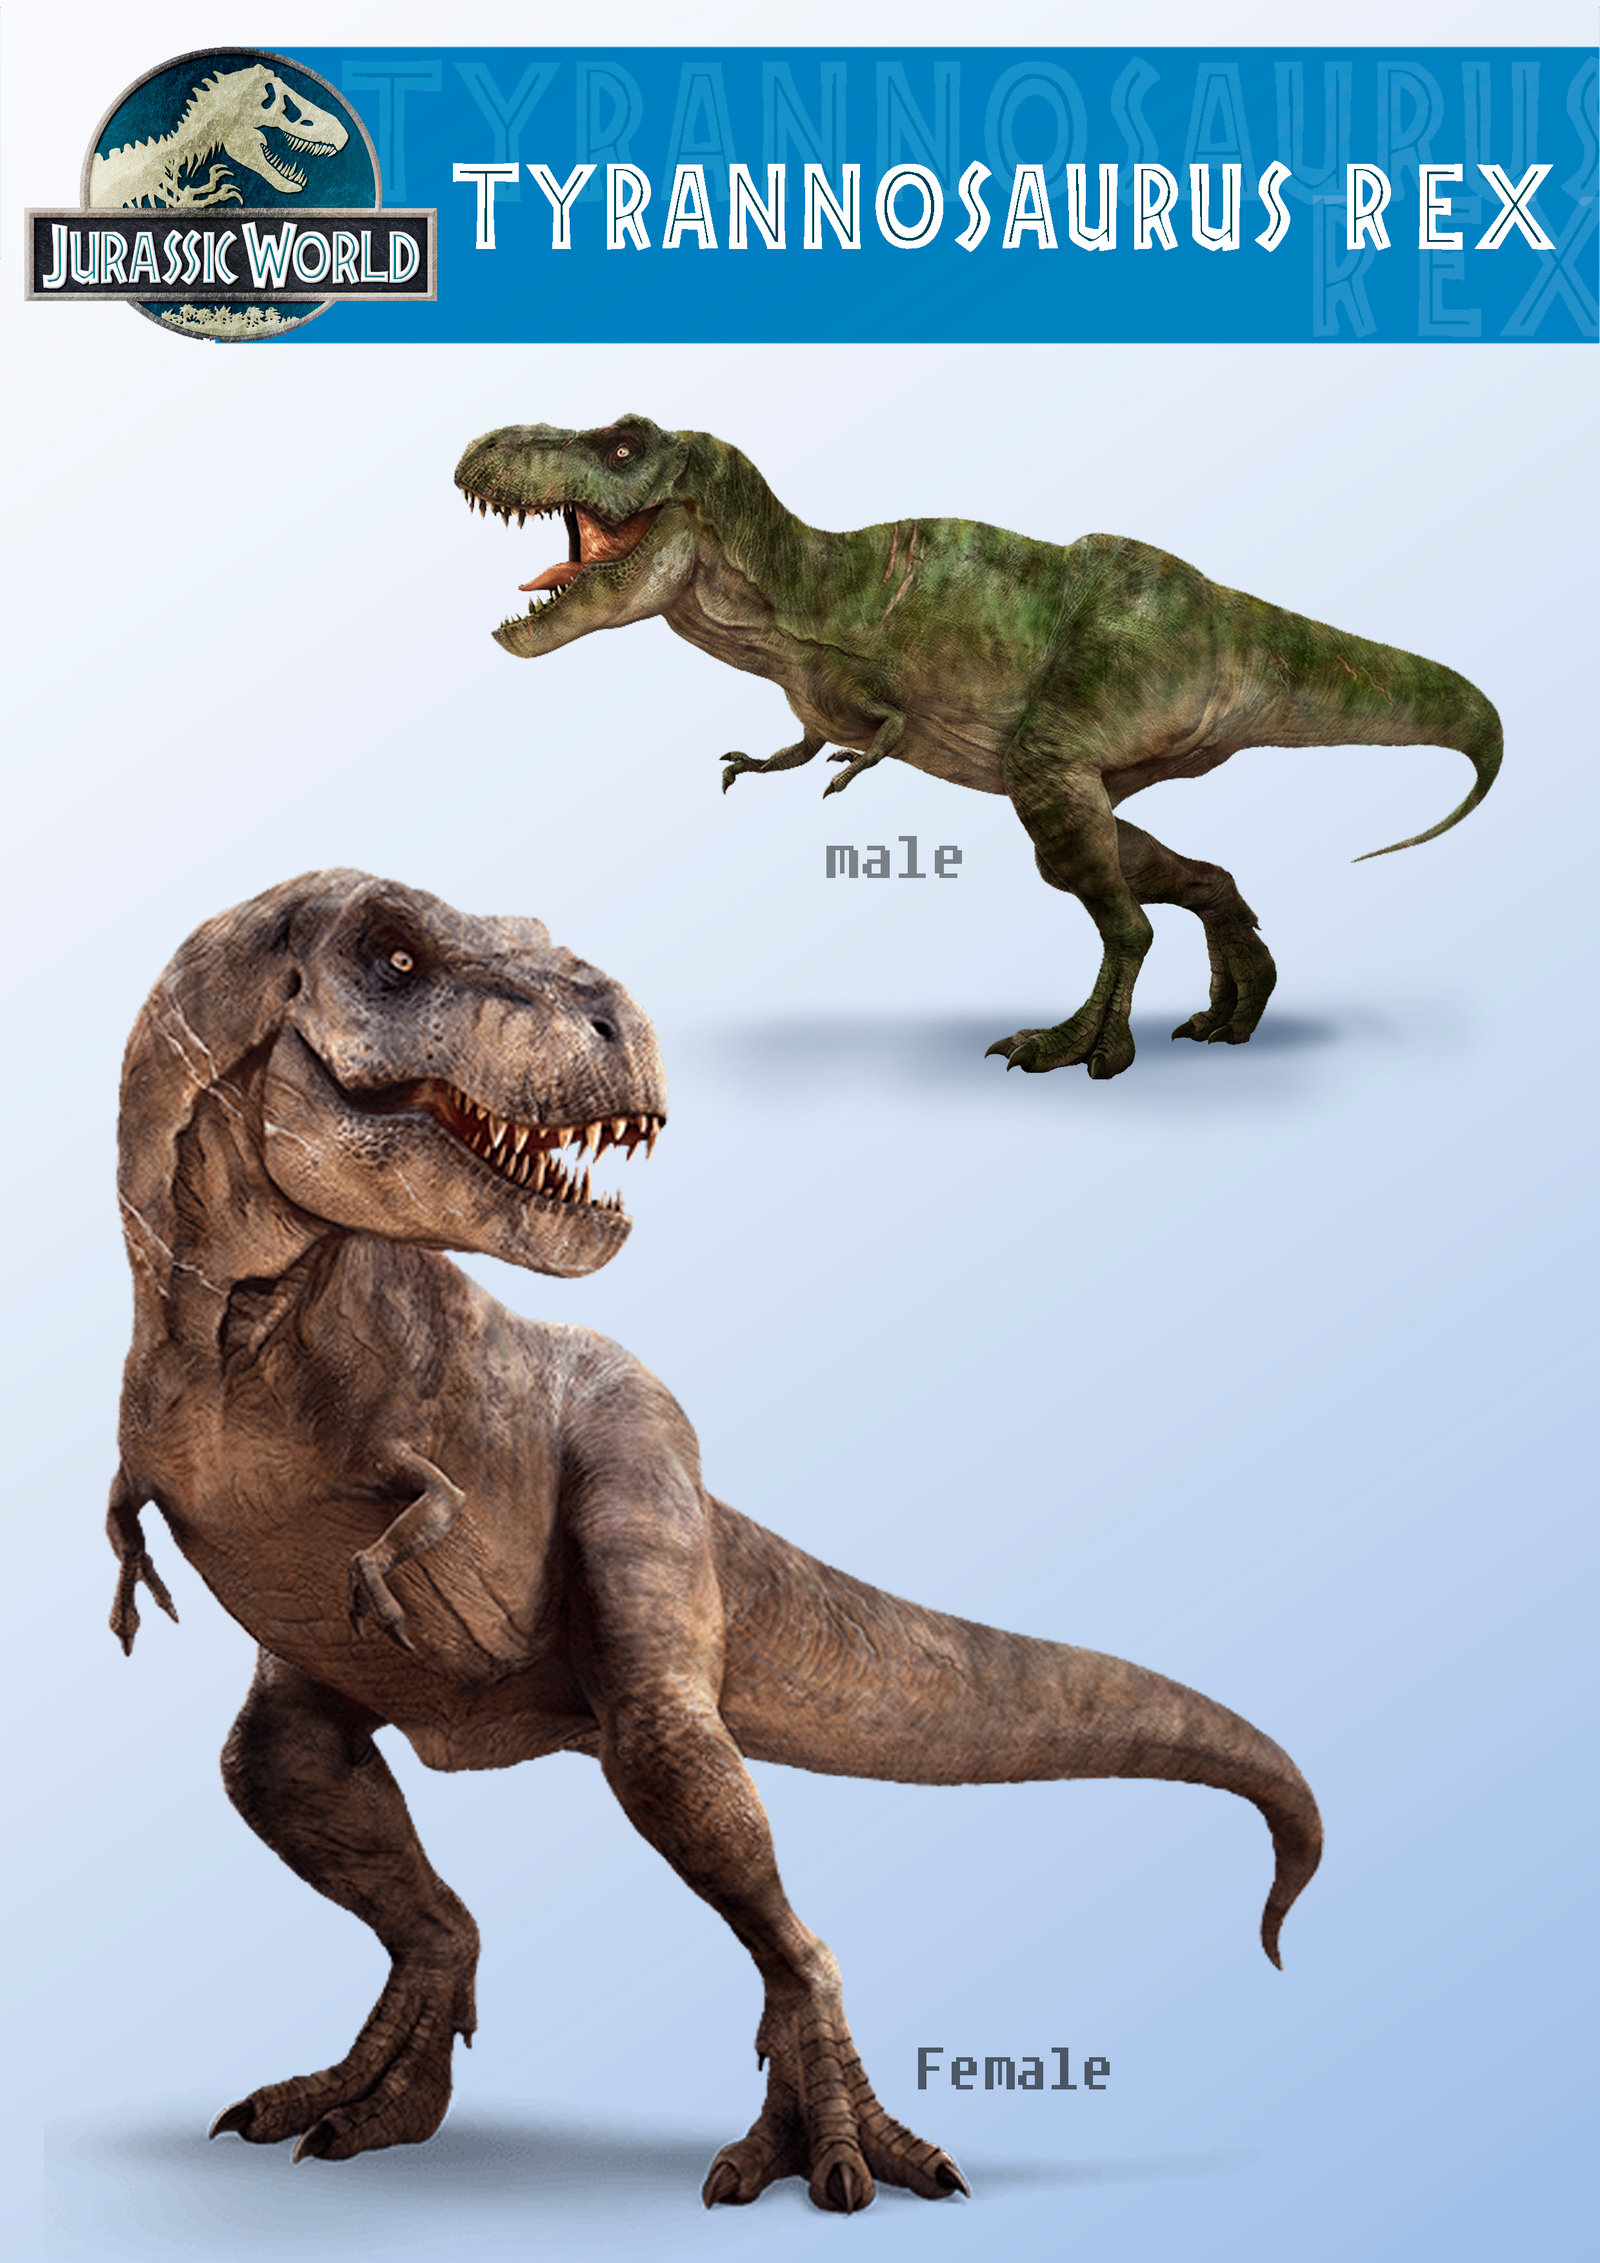 Jurassic World T Rex Wallpaper - WallpaperSafari